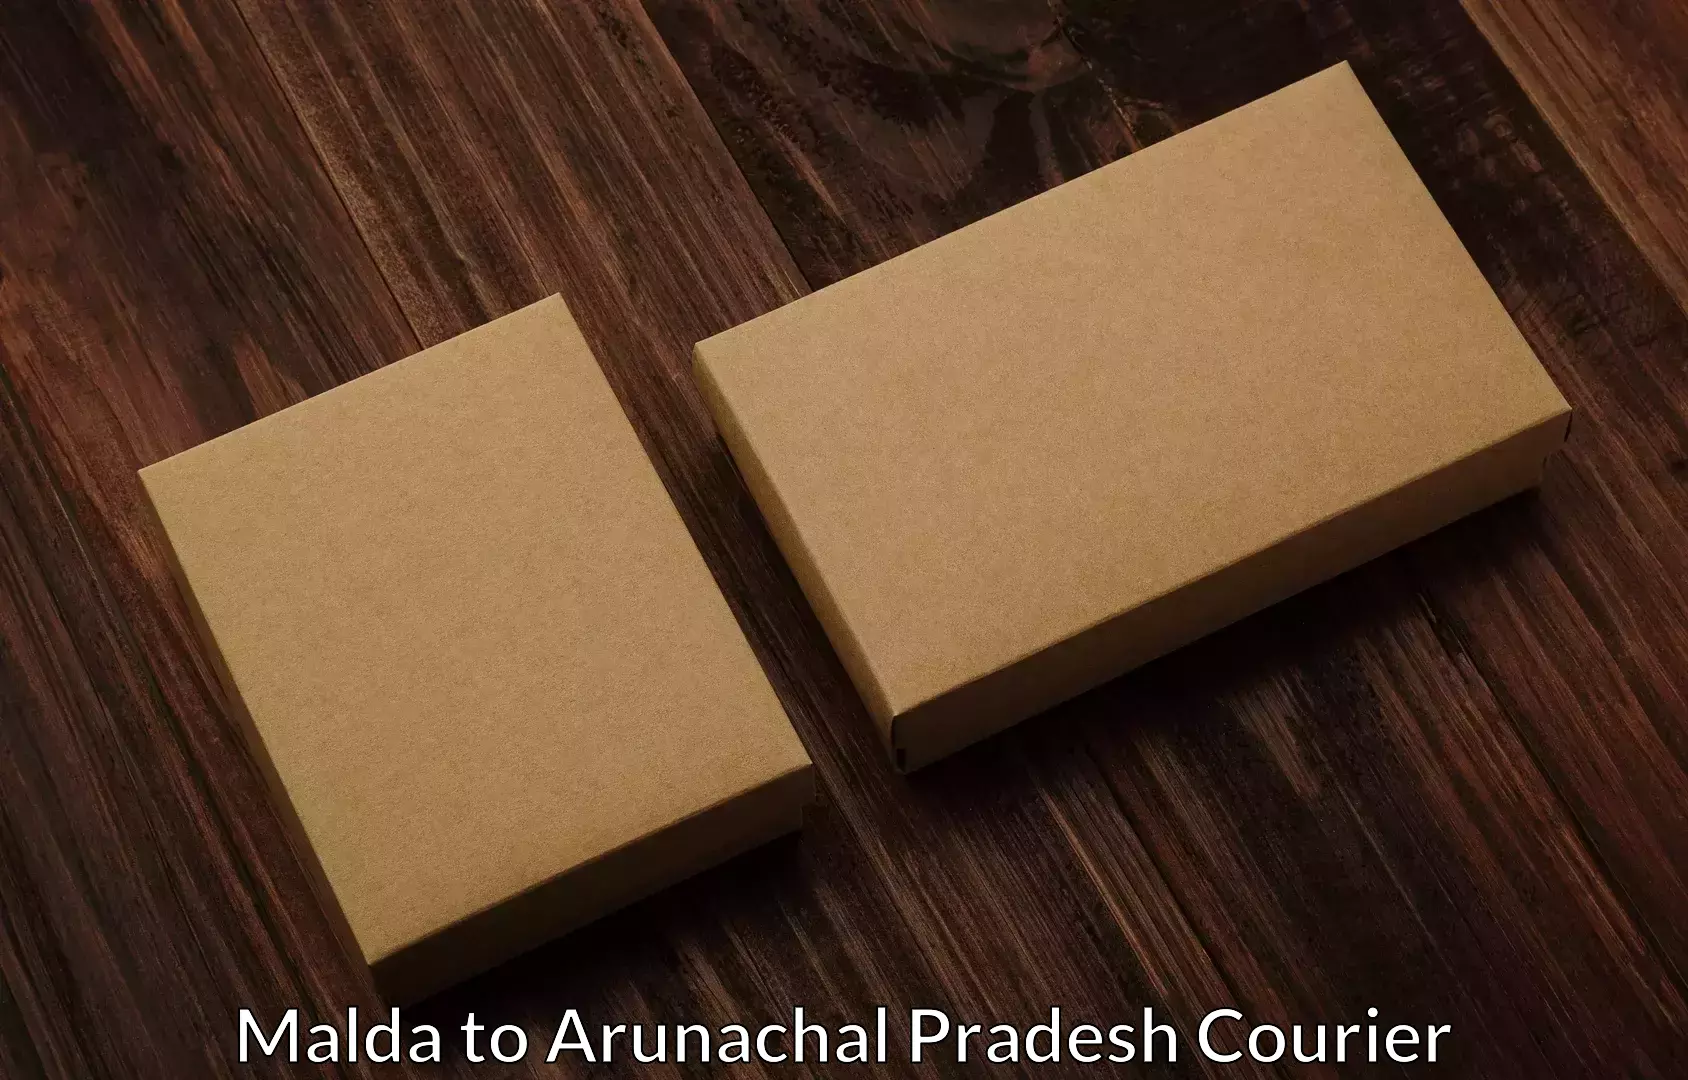 Efficient relocation services Malda to Arunachal Pradesh